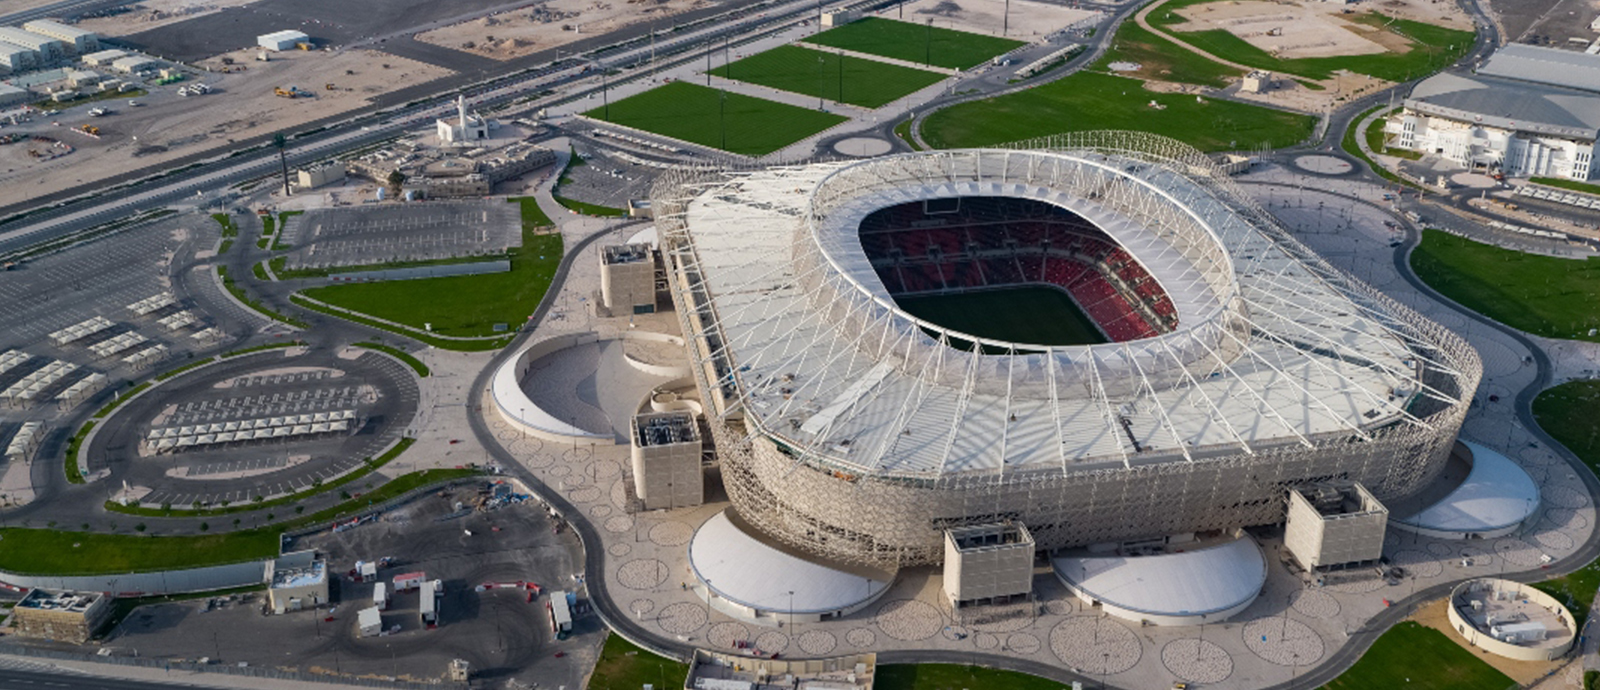 مشروع استاد الريان، أحد استادات بطولة كأس العالم FIFA قطر ٢٠٢٢™️